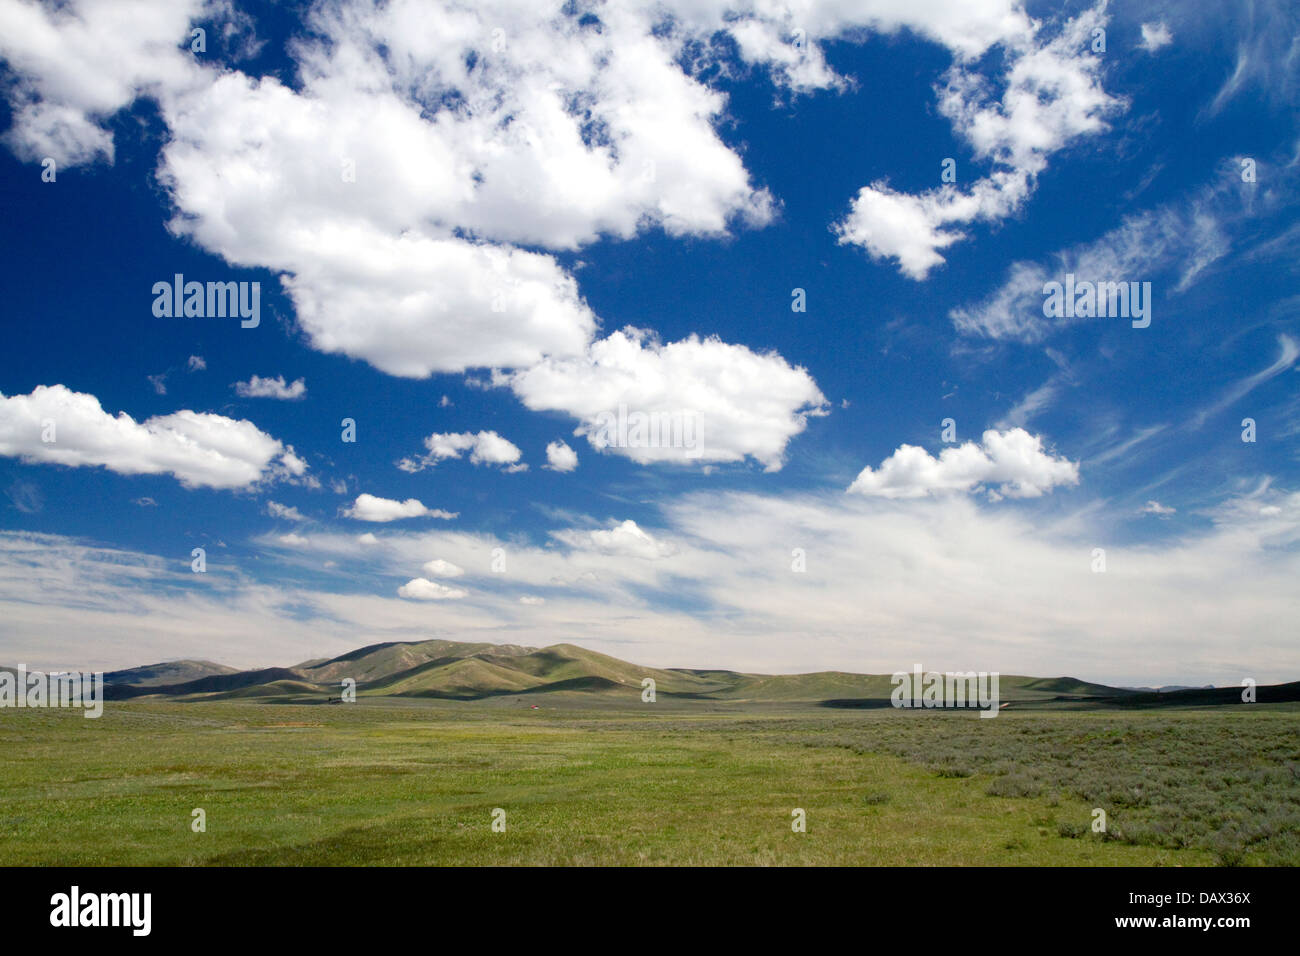 Cumulus nuvole e cielo blu su verdi campi nei pressi di pino, Idaho, Stati Uniti d'America. Foto Stock